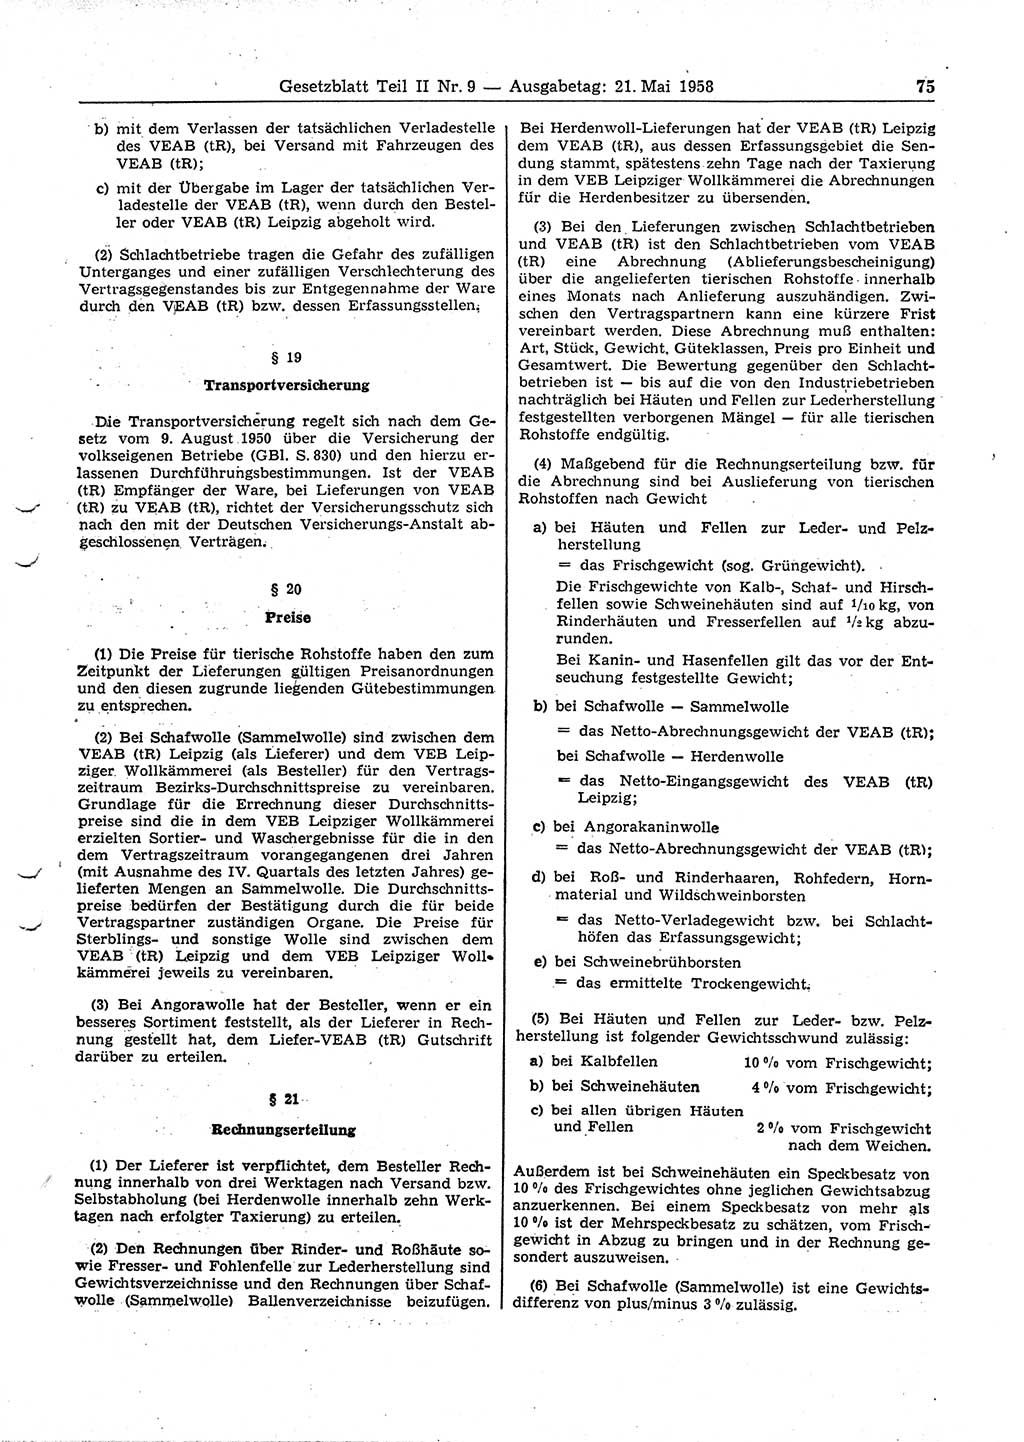 Gesetzblatt (GBl.) der Deutschen Demokratischen Republik (DDR) Teil ⅠⅠ 1958, Seite 75 (GBl. DDR ⅠⅠ 1958, S. 75)